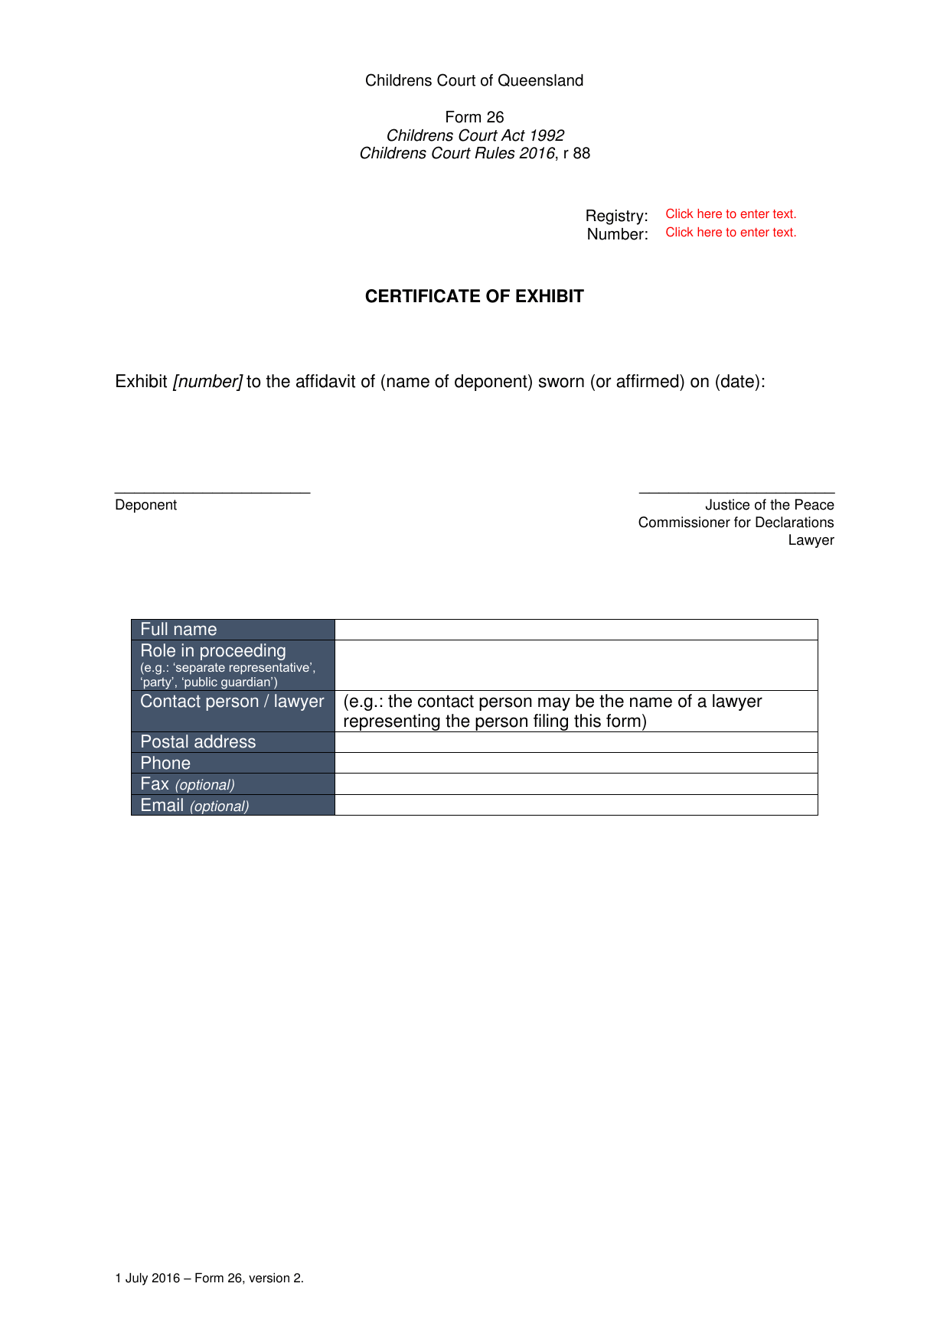 Form 26 Certificate of Exhibit - Queensland, Australia, Page 1